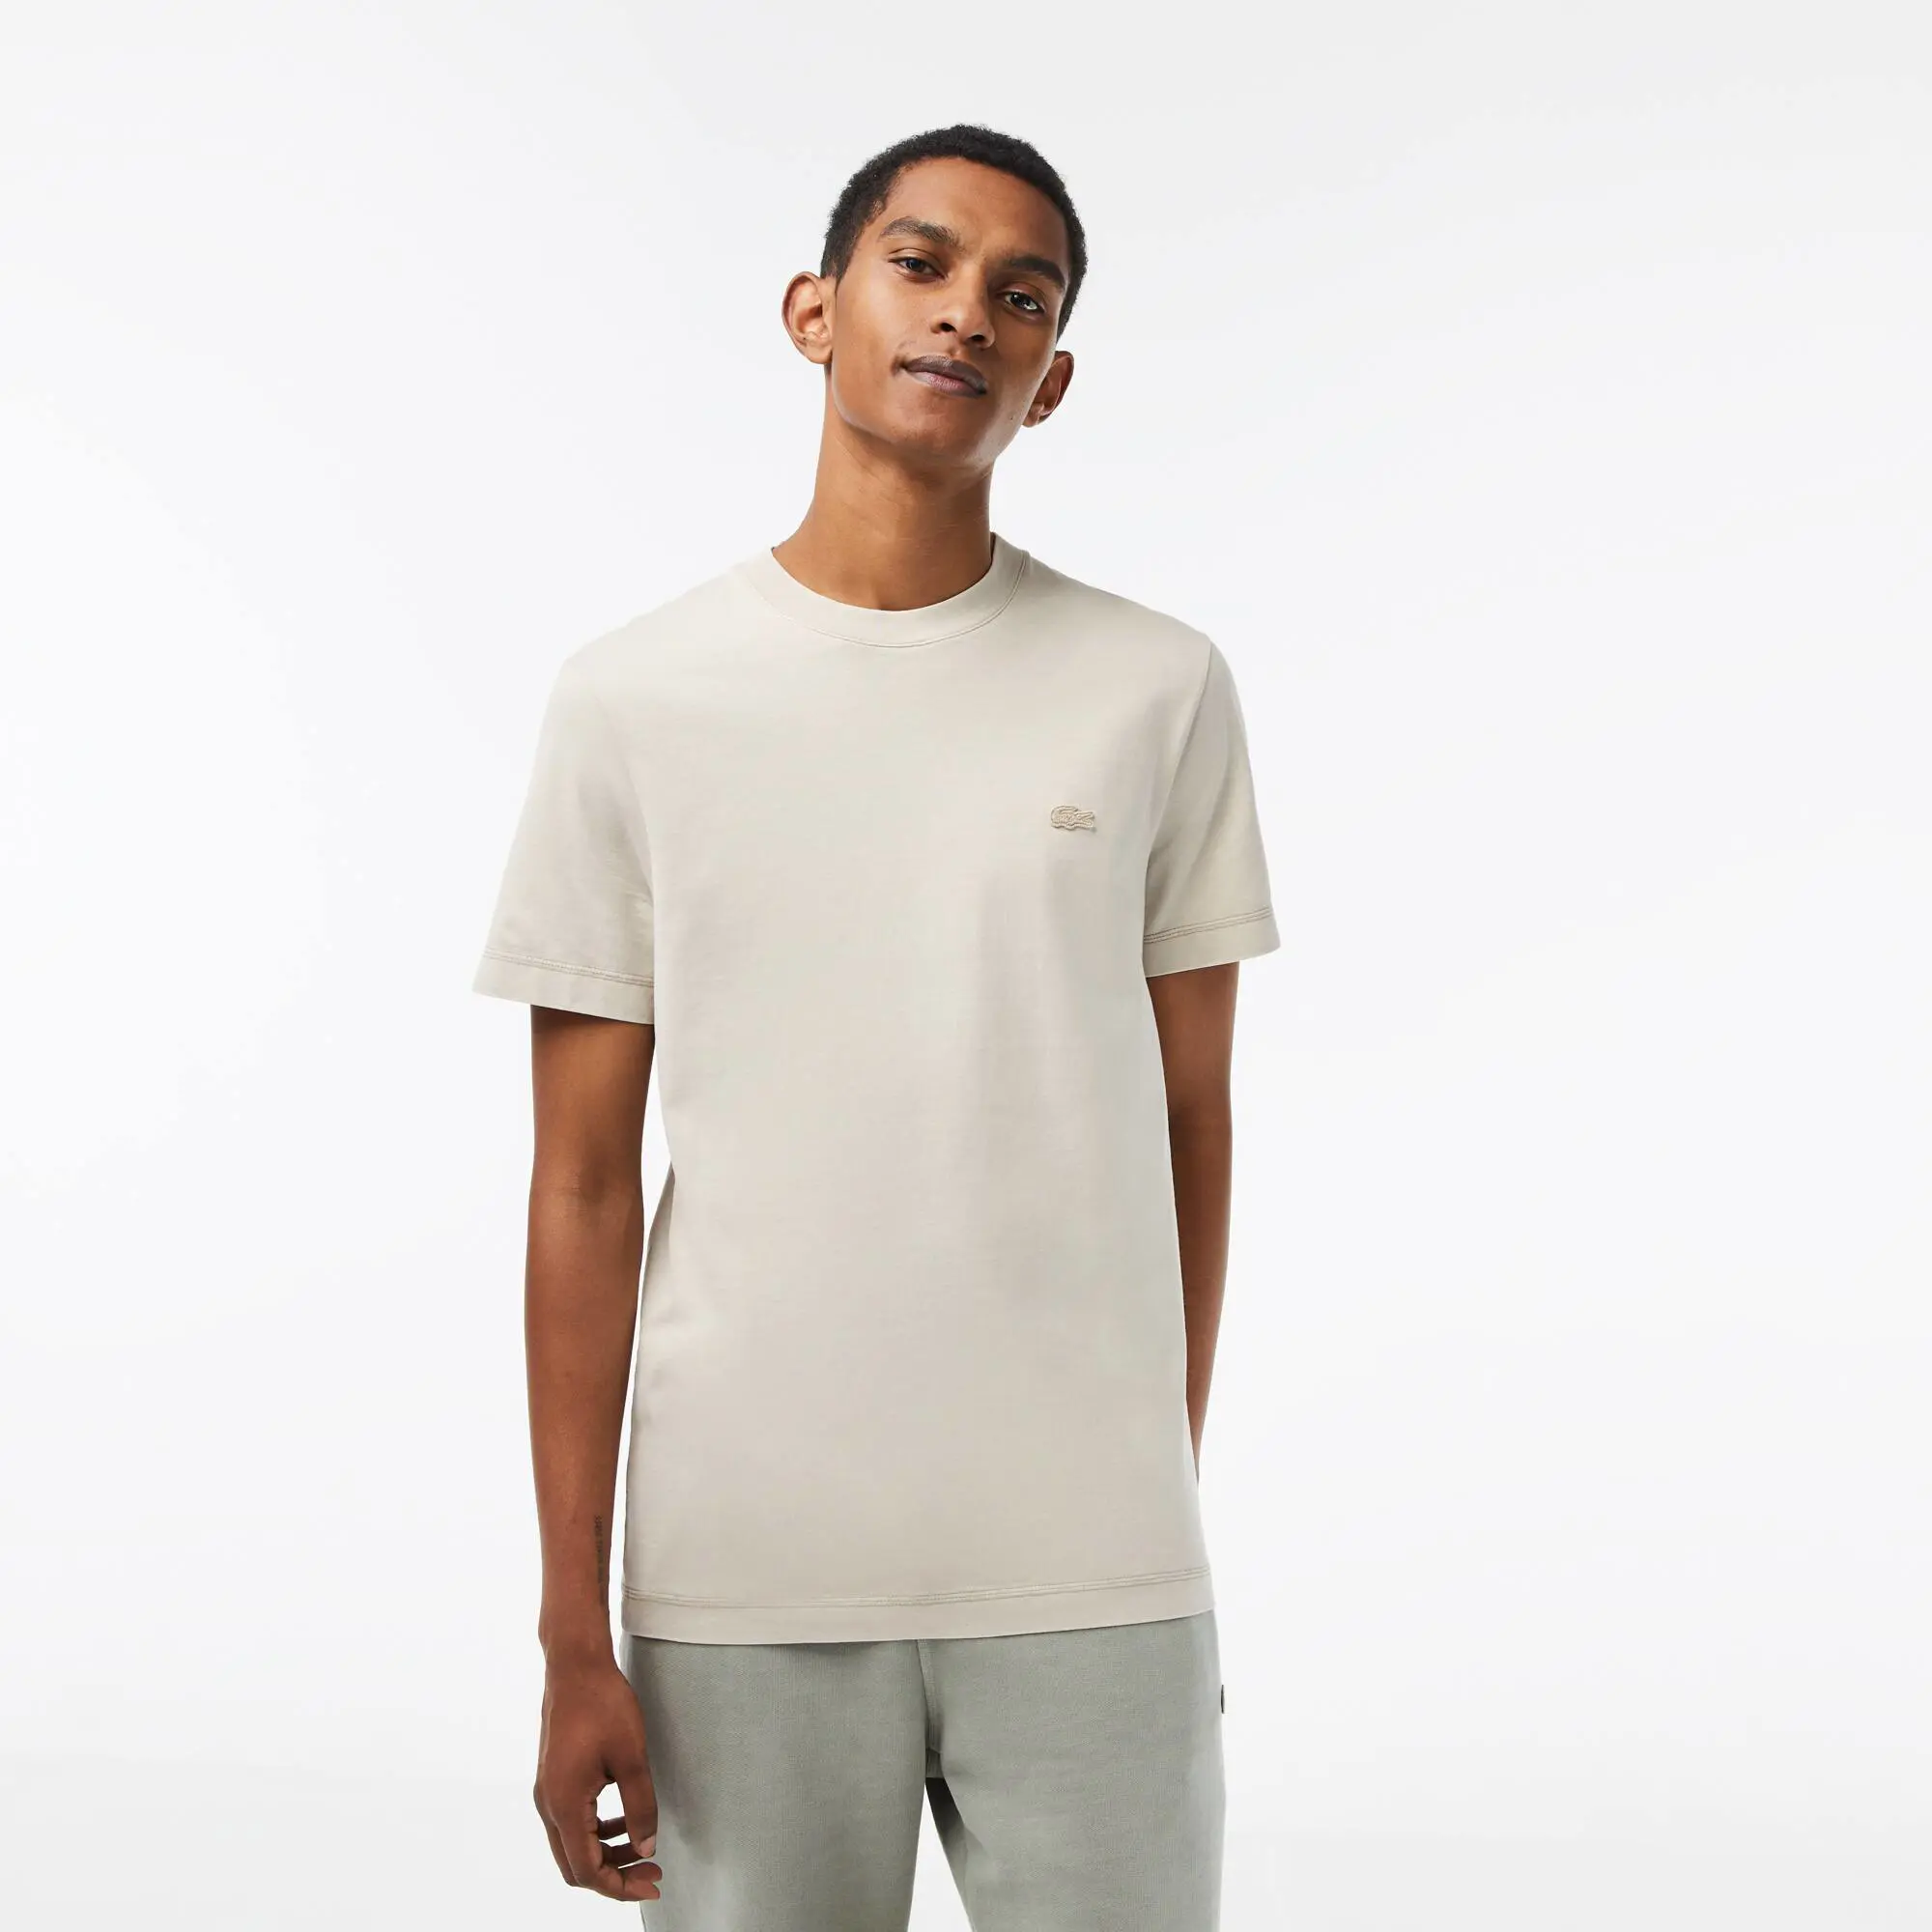 Lacoste T-shirt uni homme Lacoste en coton biologique. 1